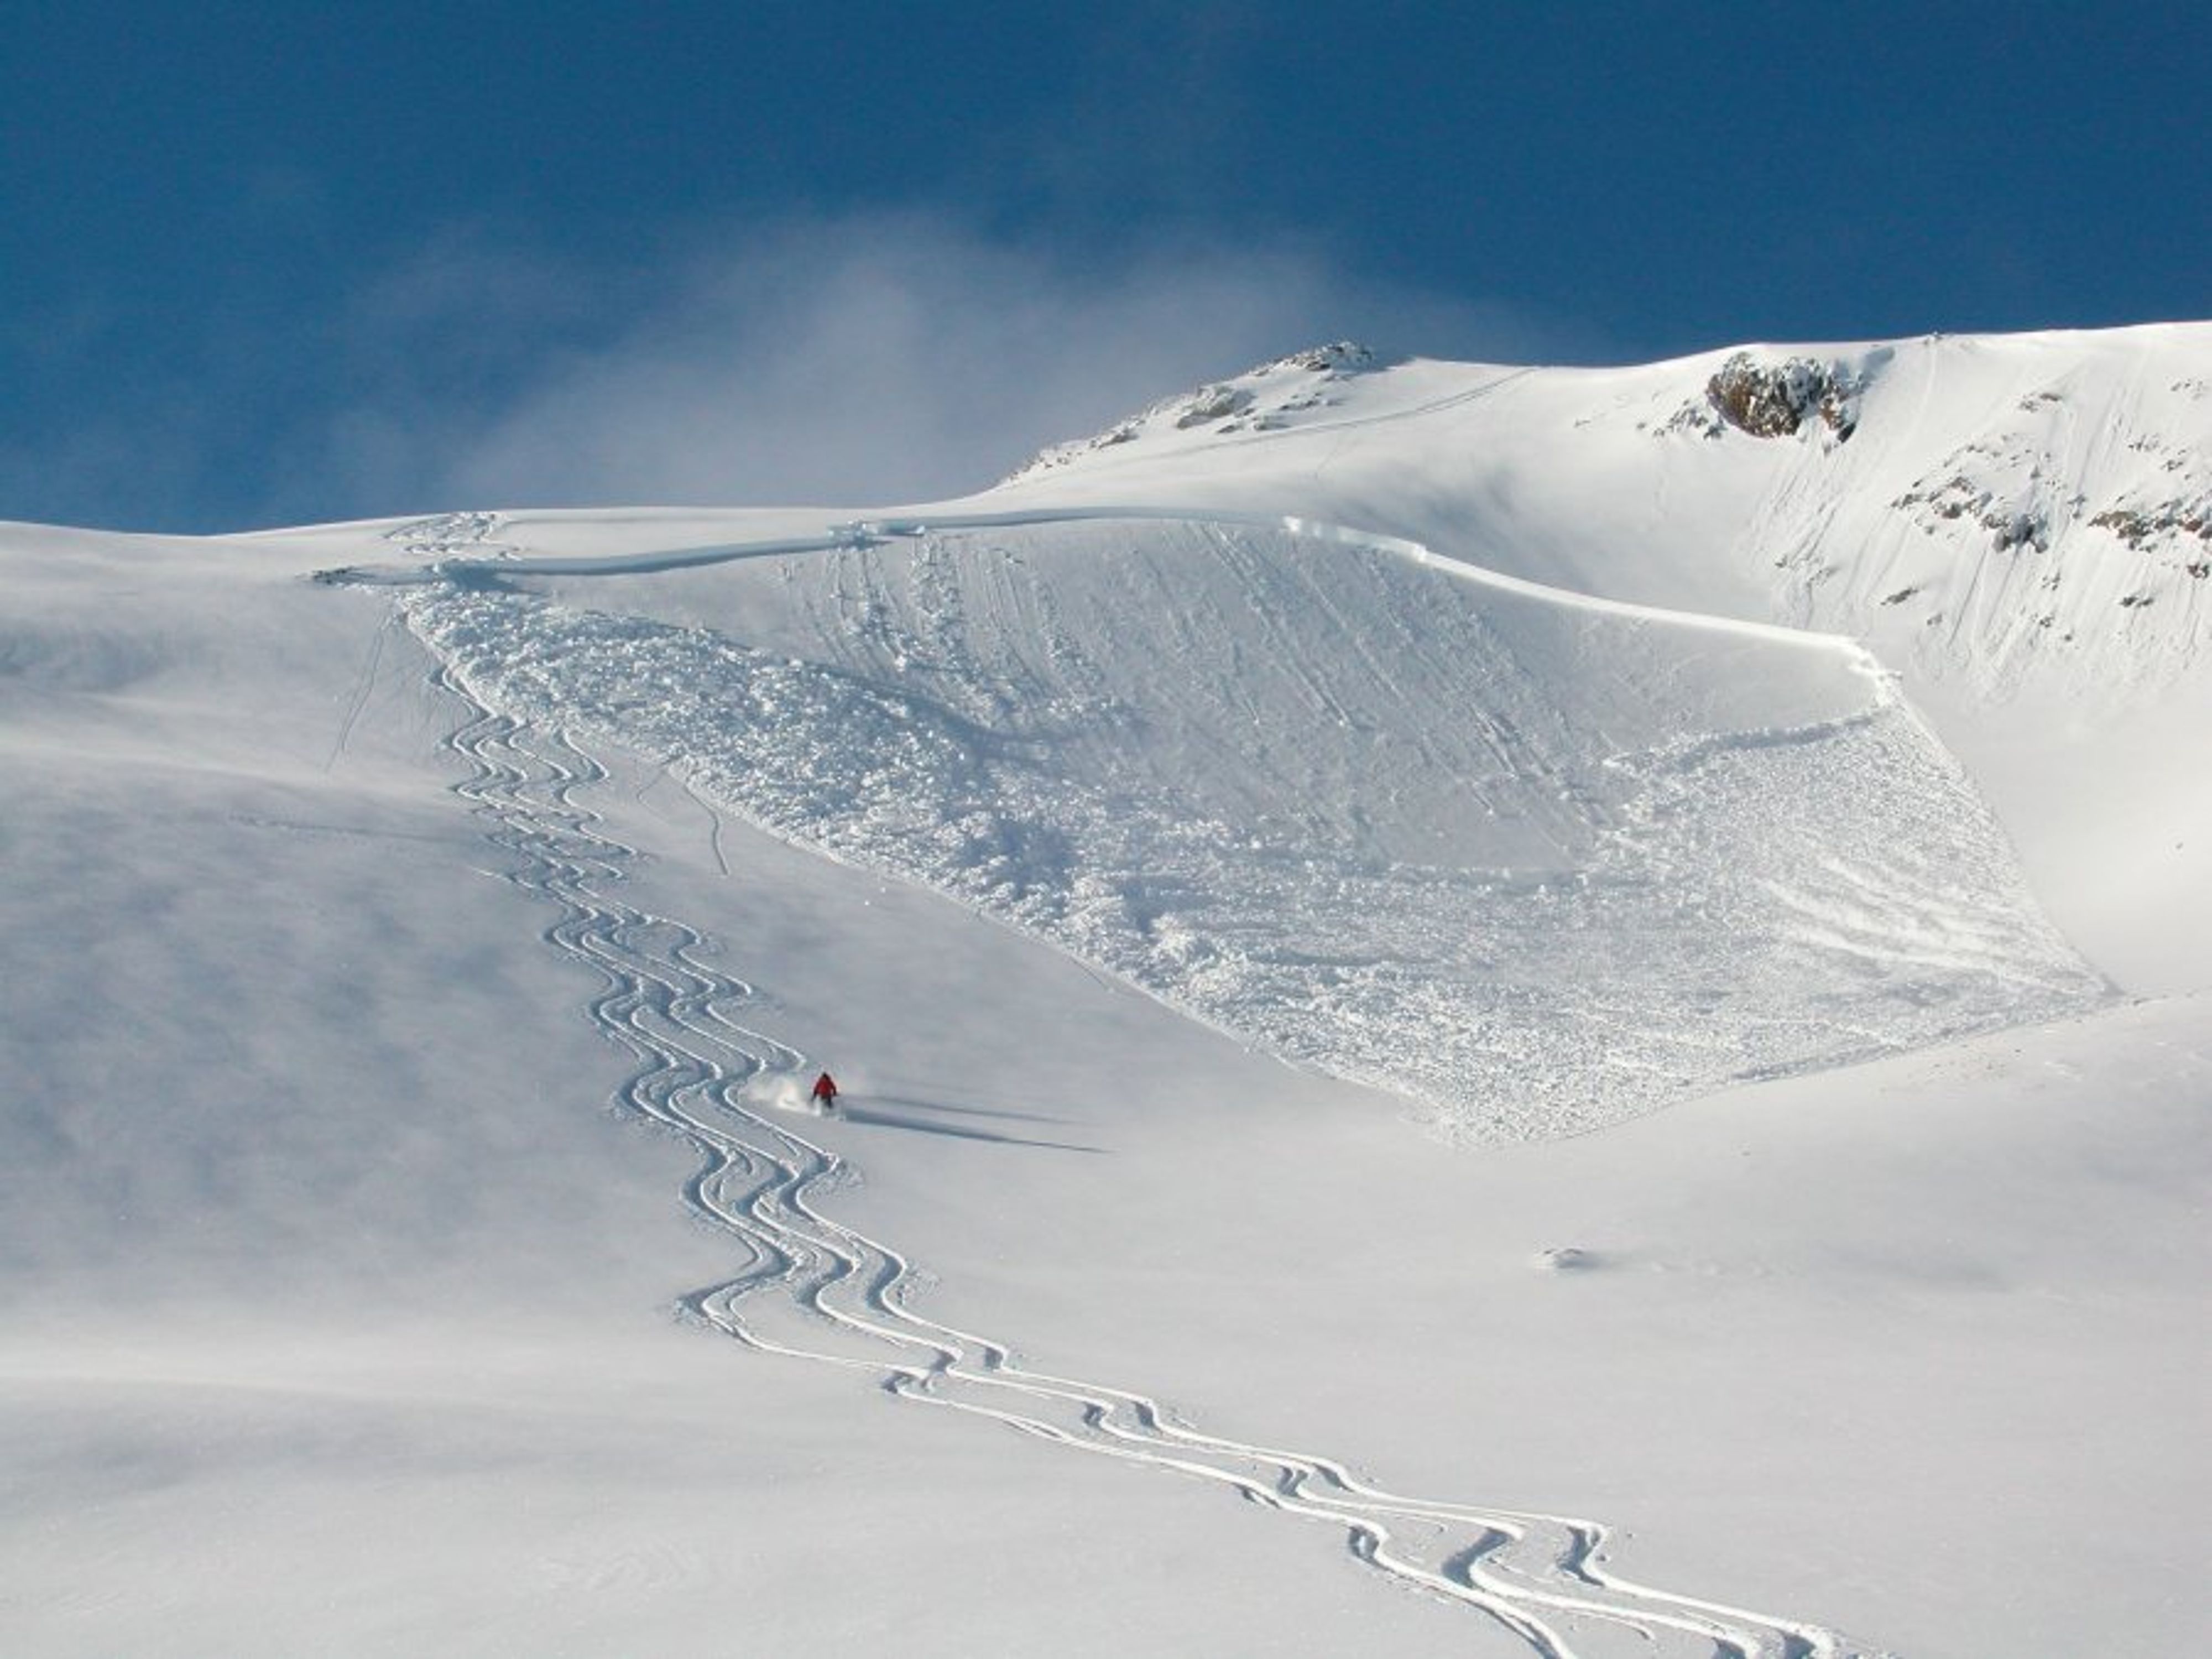 Cette avalanche a été déclenchée par un skieur qui se trouvait en haut d’une convexité de terrain, à l’endroit où la pente devient rapidement plus raide. Heureusement, personne ne s’est fait emporter.